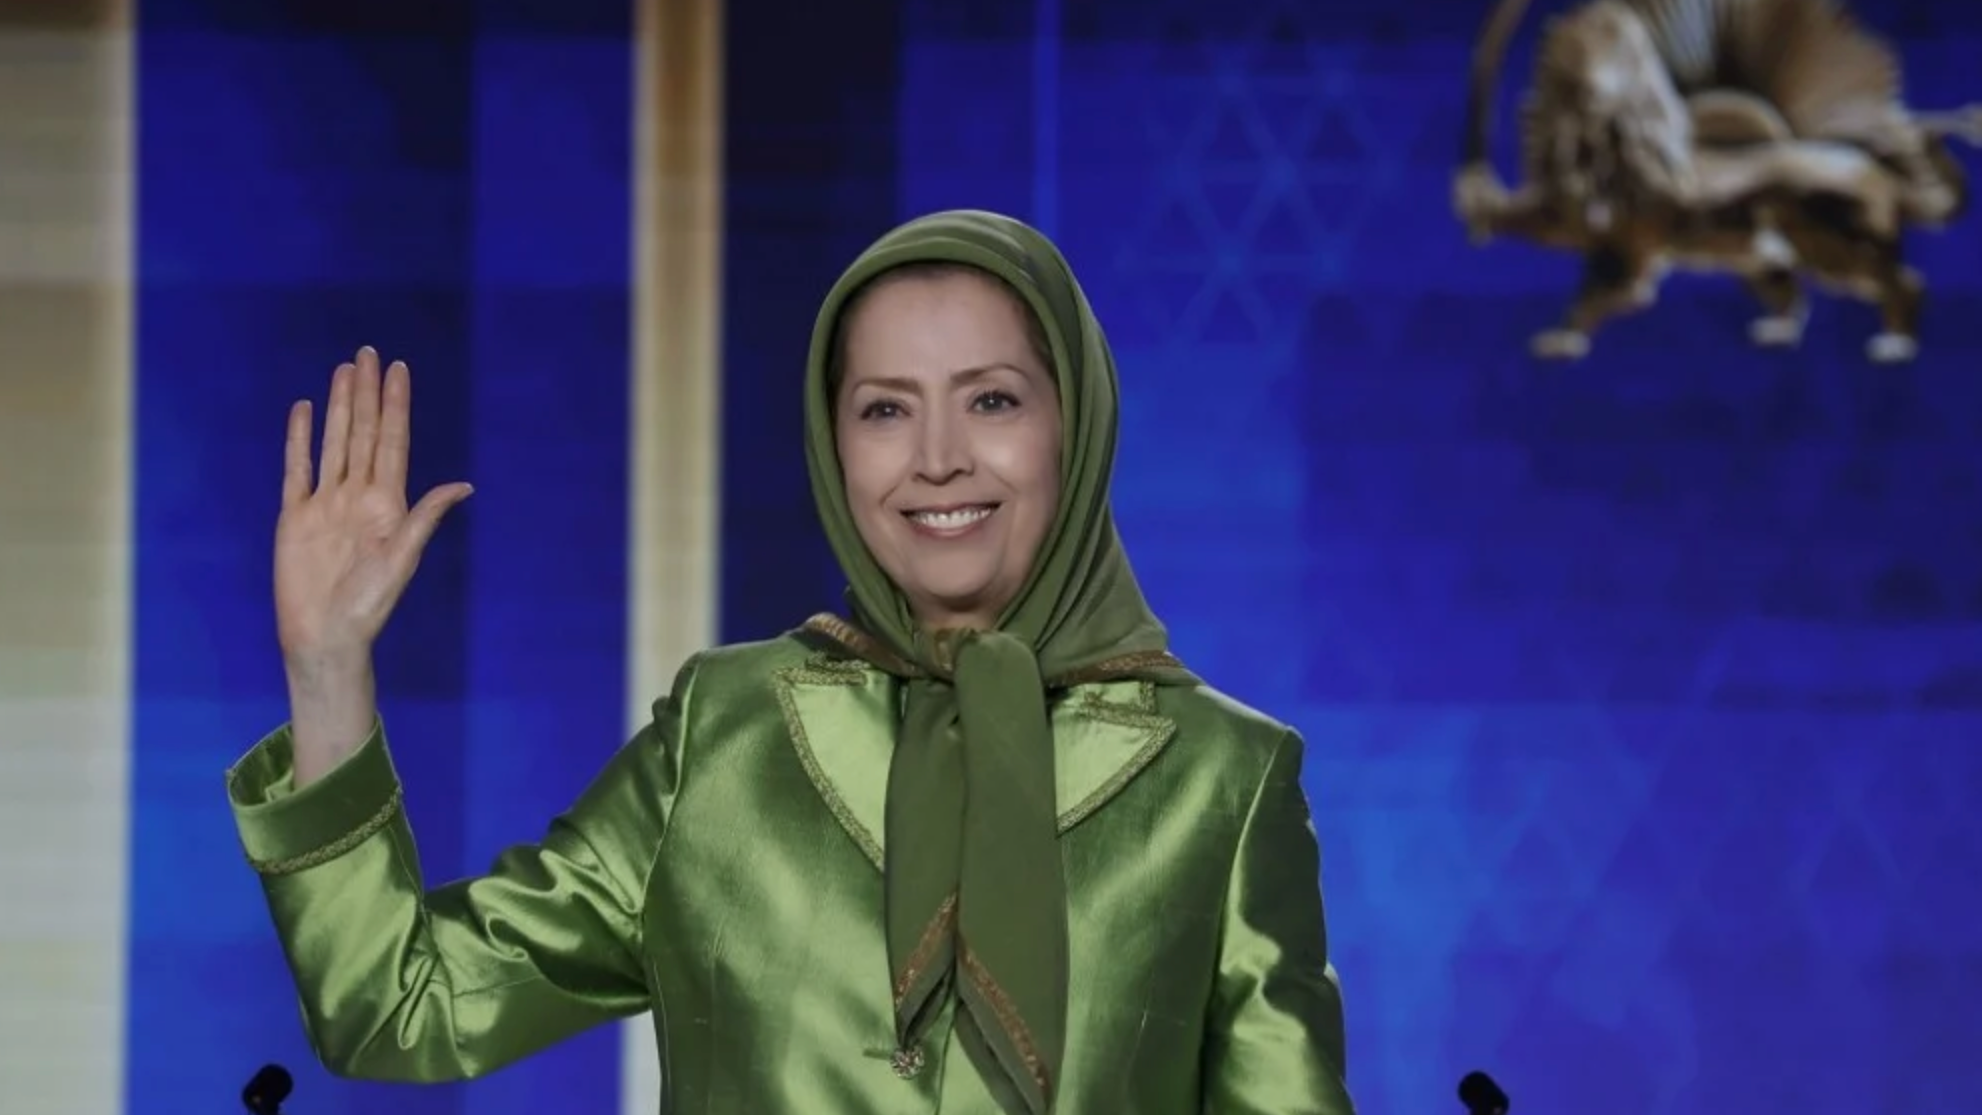 حظيت السيدة مريم رجوي والمجلس الوطني للمقاومة الإيرانية بإشادة واسعة من قبل المشاركين